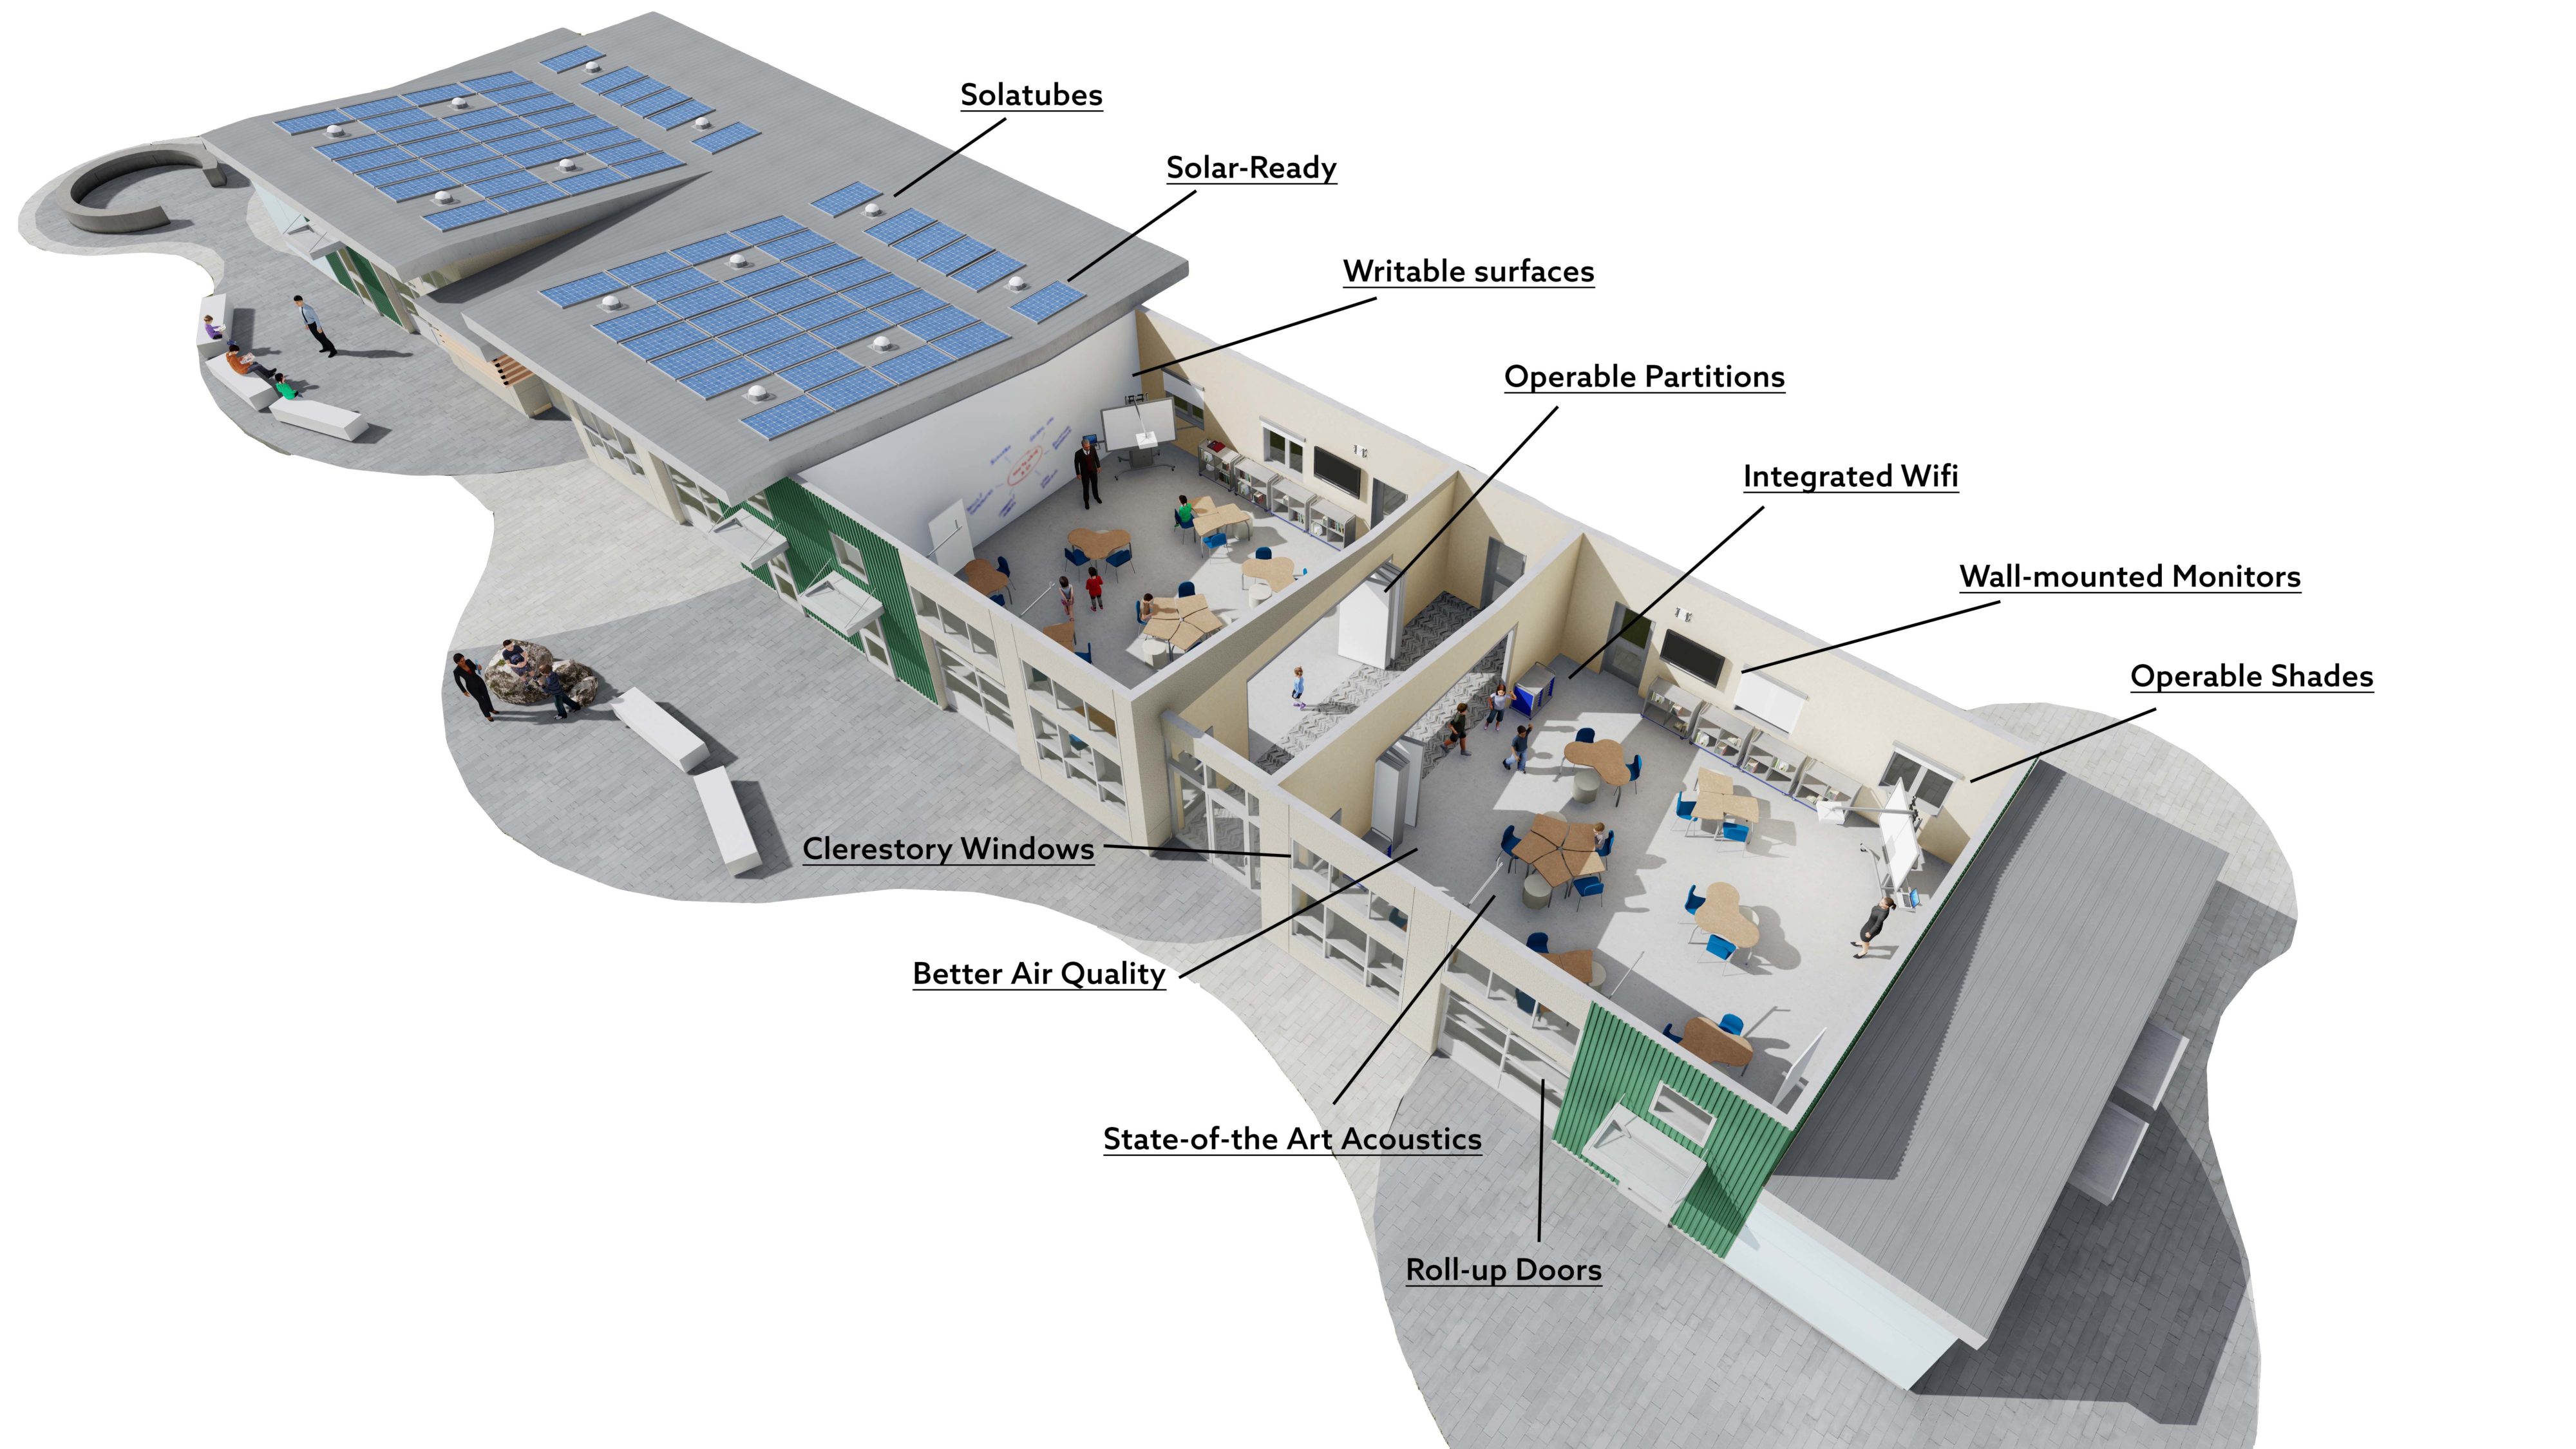 PRODIGi21 Modular Classroom Design - Aerial View